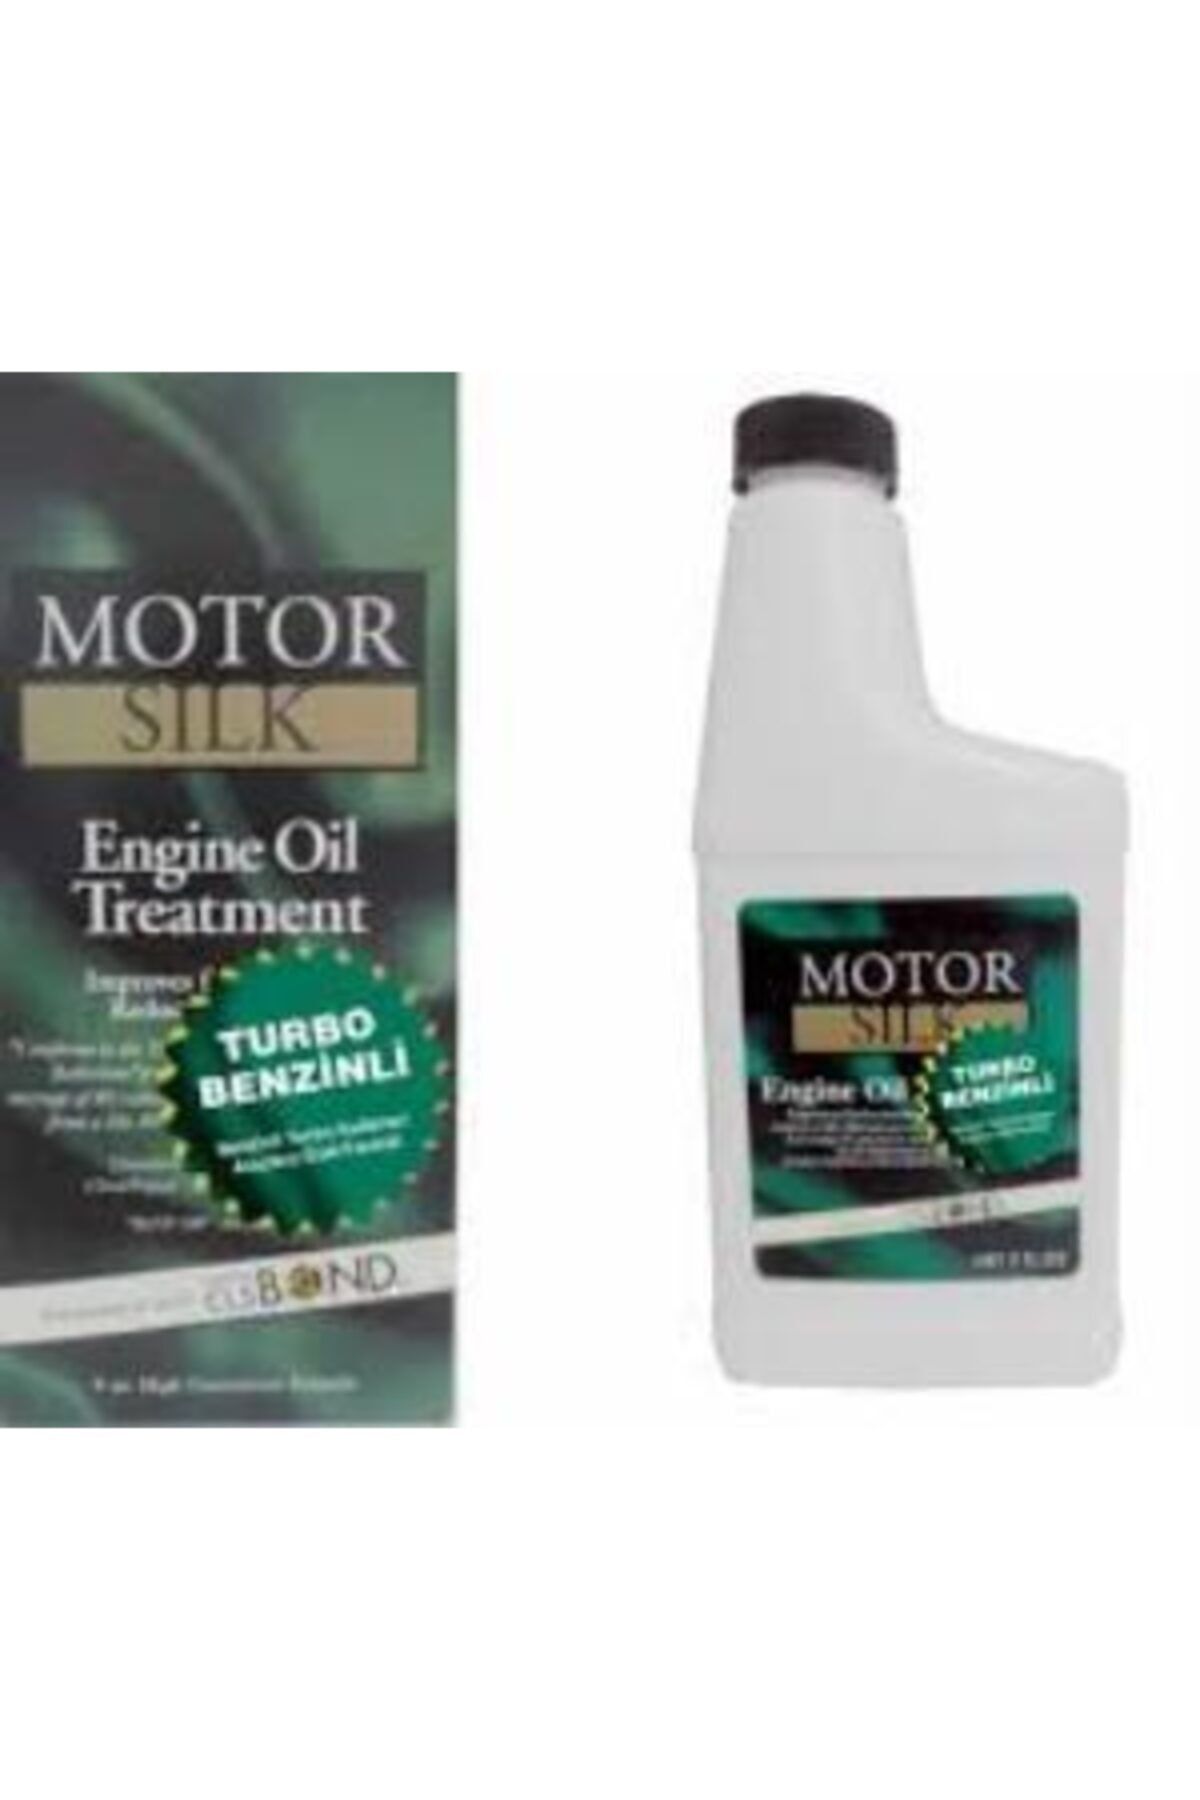 MotorSilk Motor Silk Turbo Benzinli Araçlar Özel Formul Bor Katkı